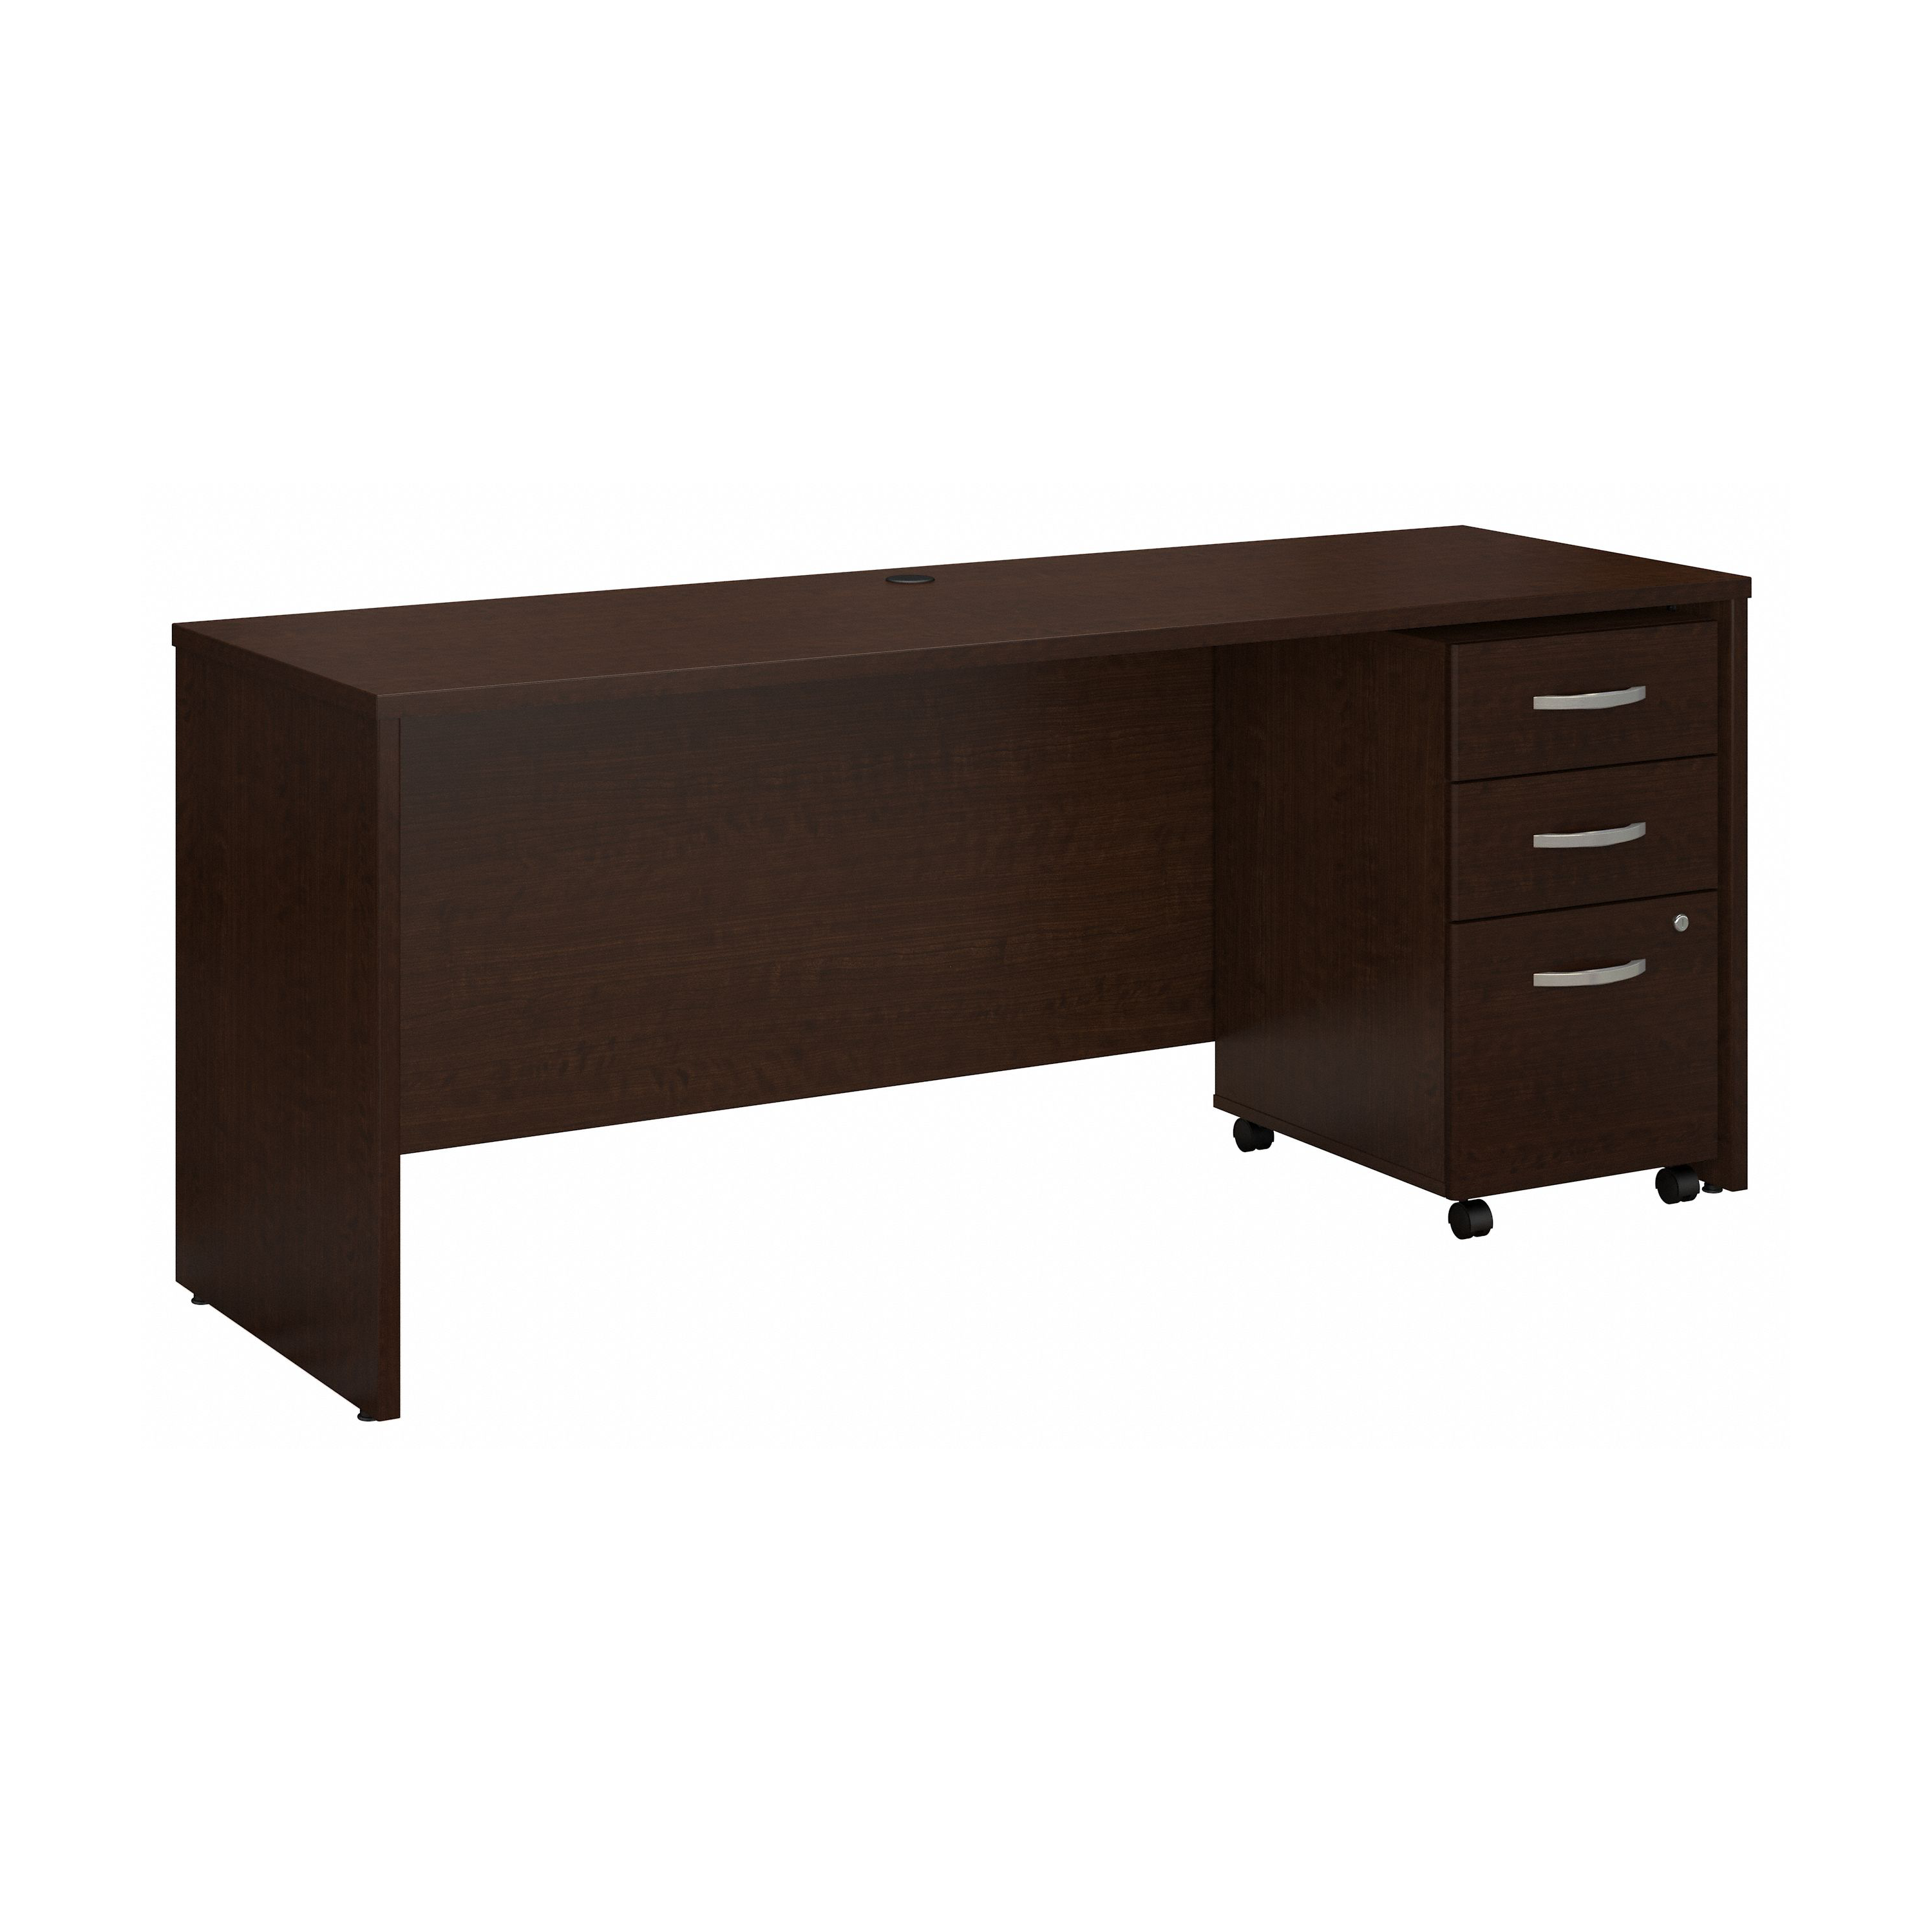 Shop Bush Business Furniture Series C 72W x 24D Office Desk with Mobile File Cabinet 02 SRC026MRSU #color_mocha cherry